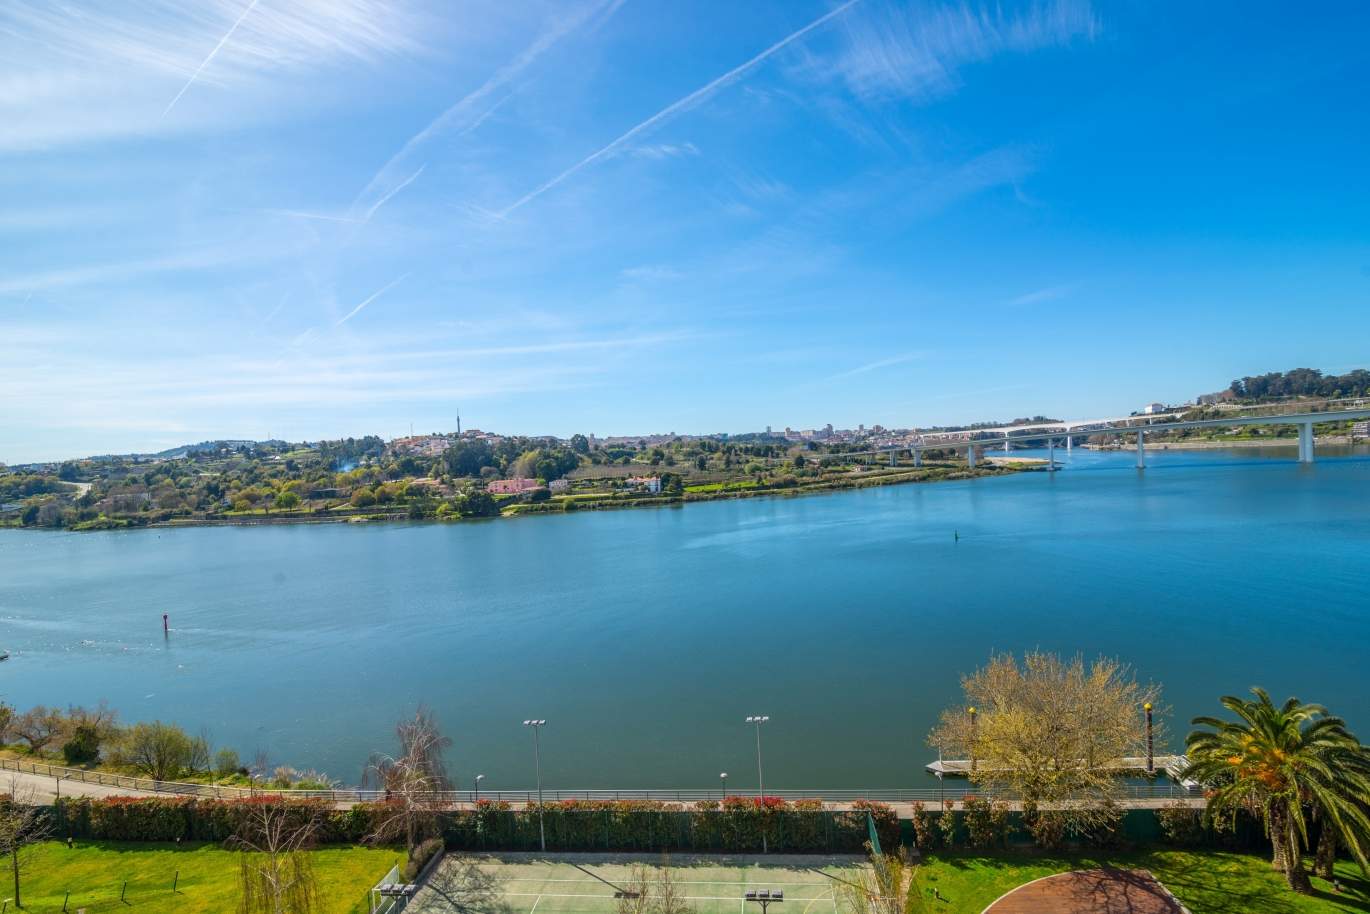 Venda apartamento com vistas rio, condomínio de luxo, Porto, Portugal_99627